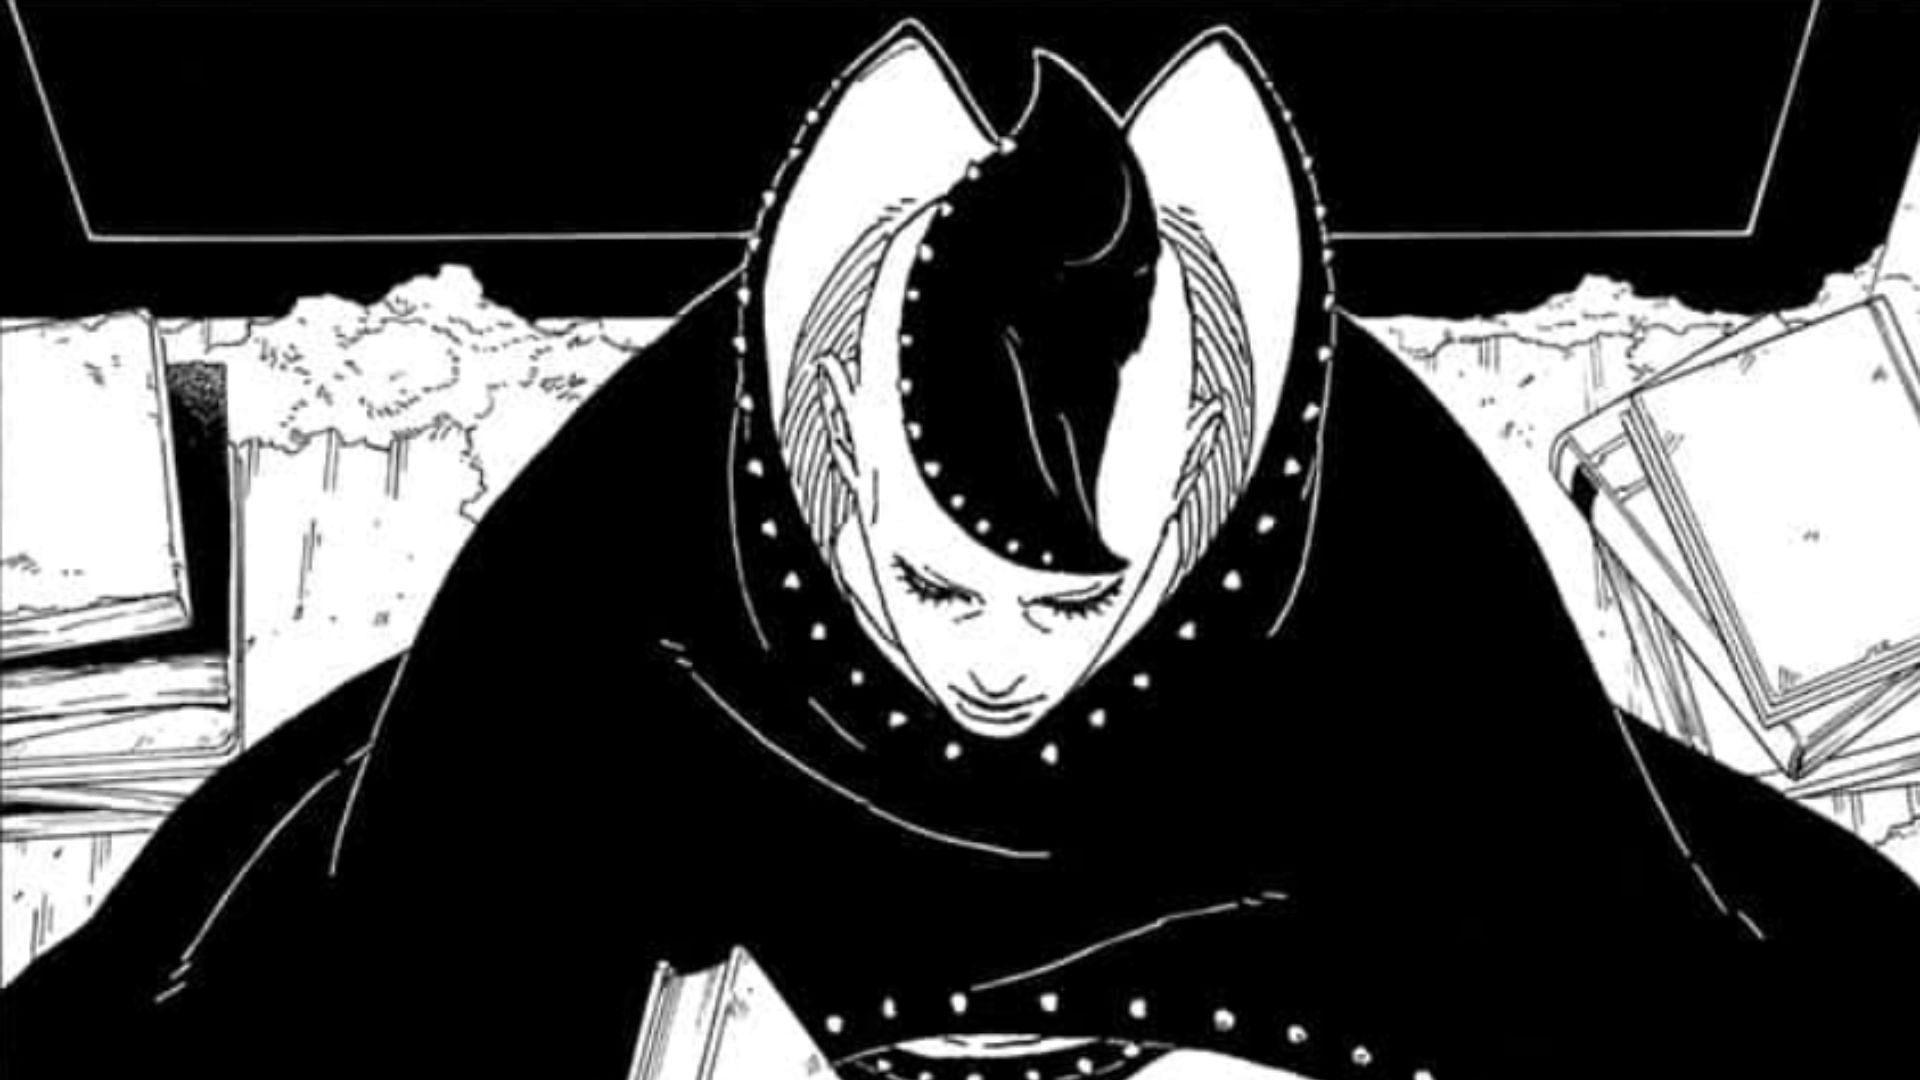 Jura as seen in the manga series (Image via Shueisha)